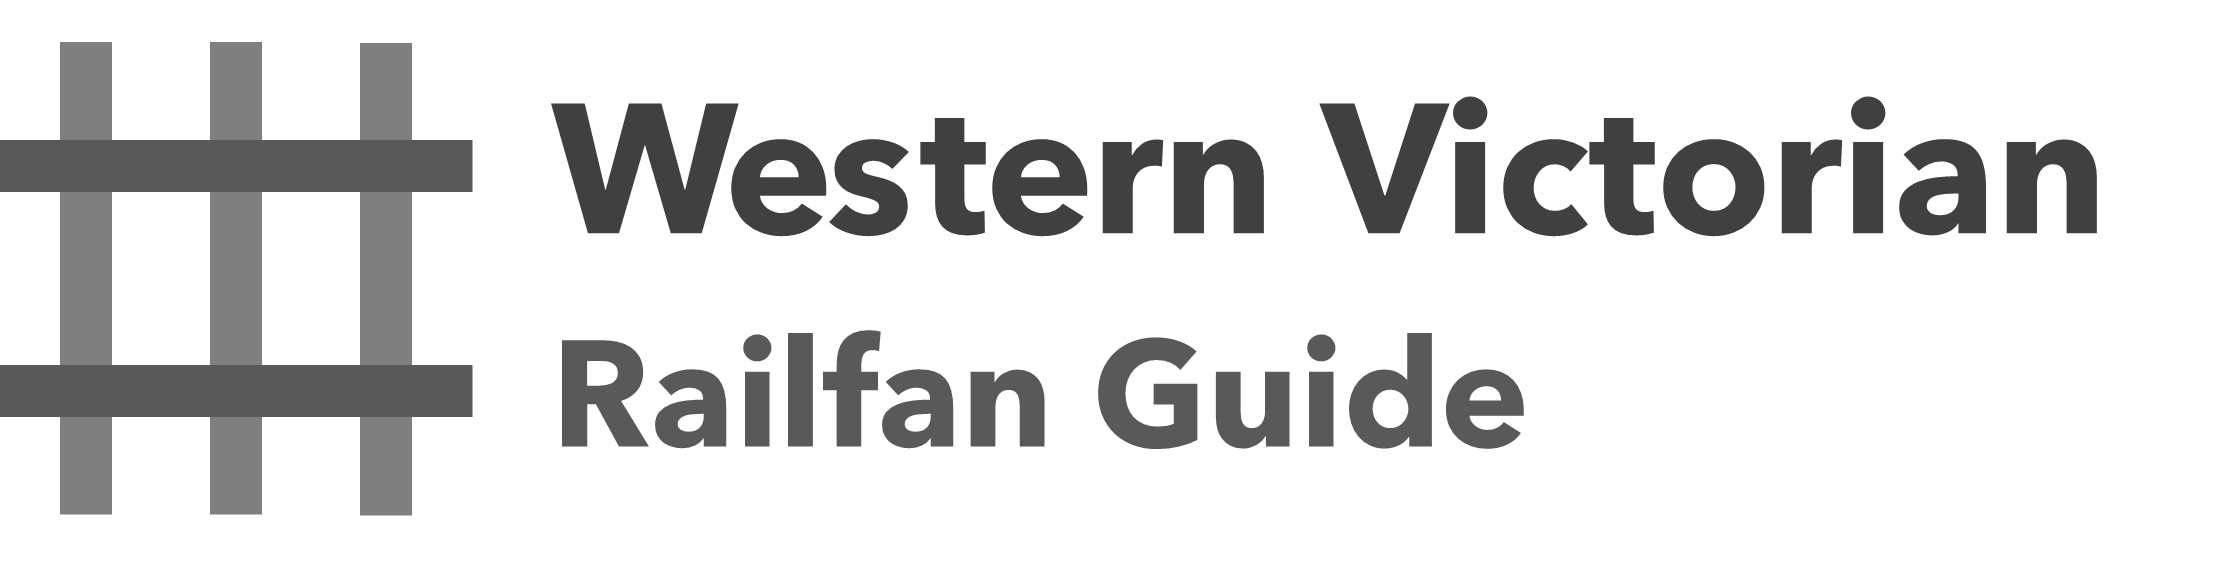 Western Victorian Railfan Guide